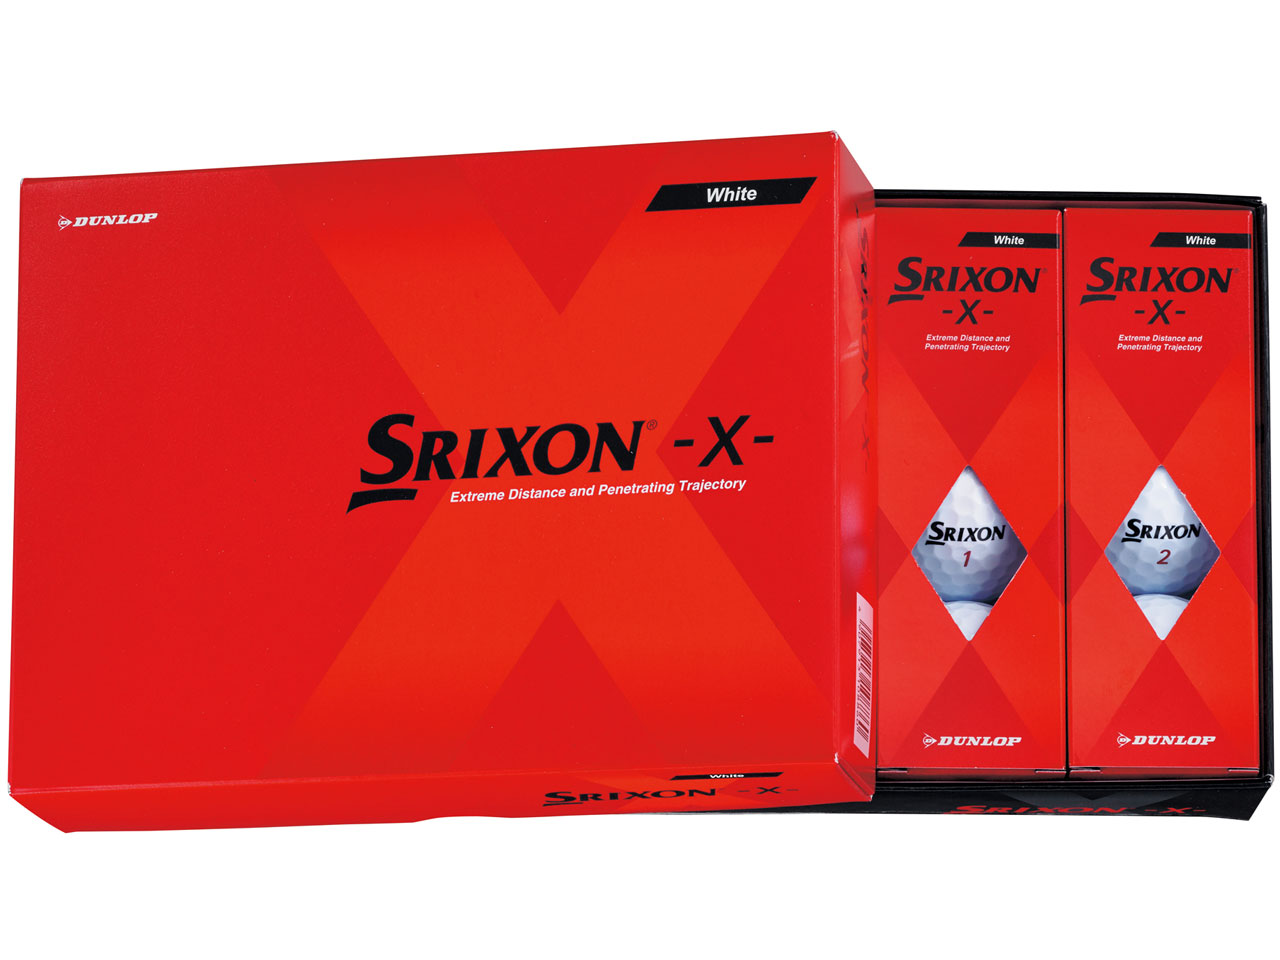 価格.com - スリクソン -X- [ホワイト] の製品画像